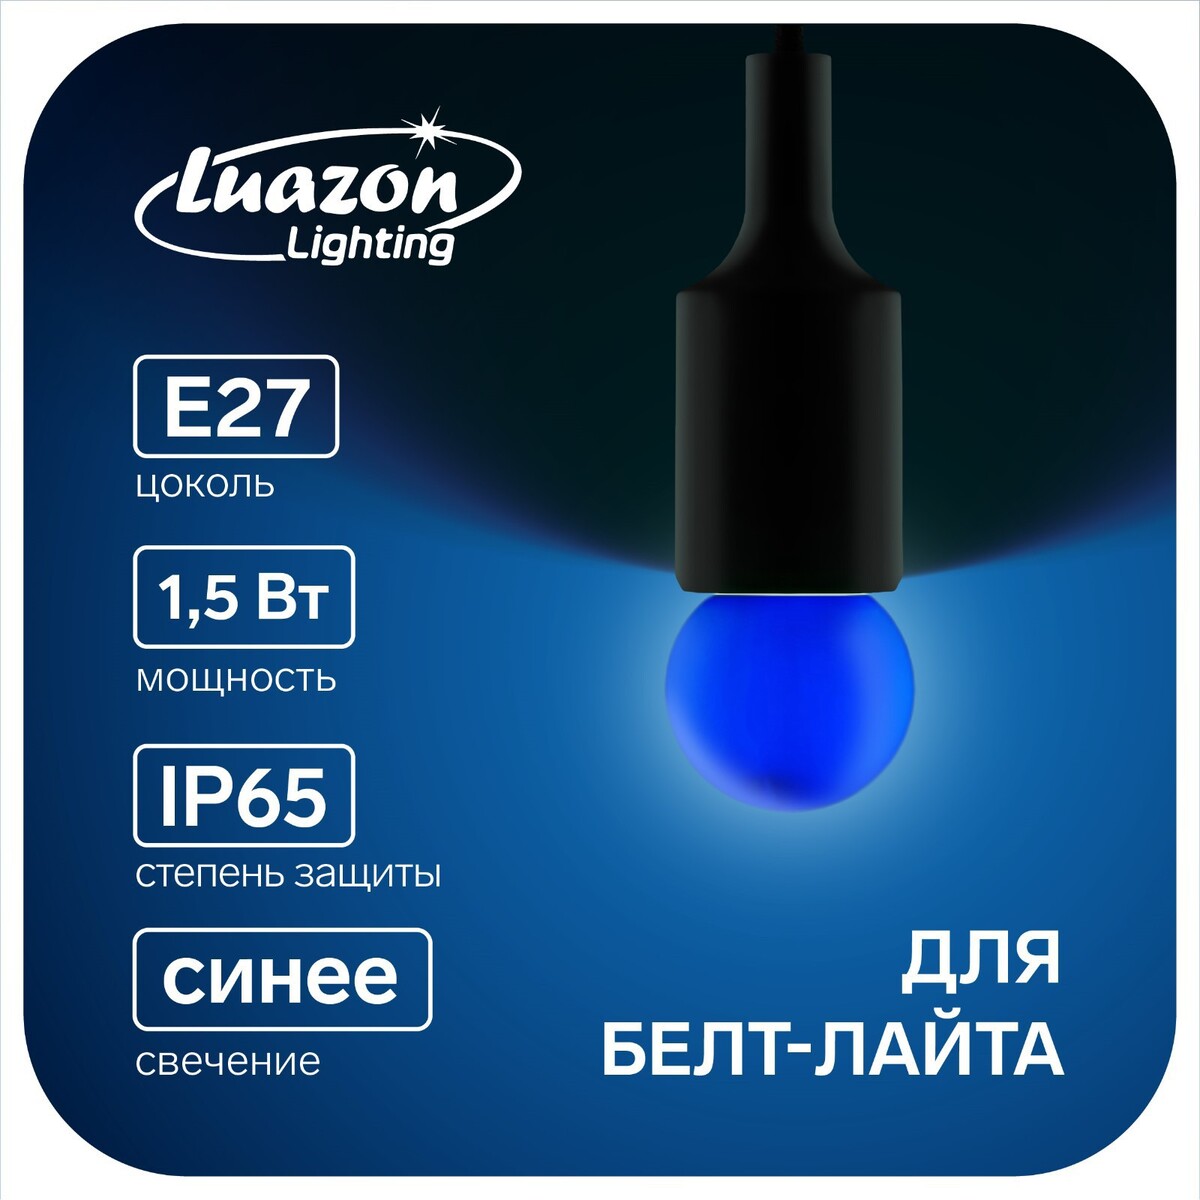 Лампа светодиодная luazon lighting, g45, е27, 1.5 вт, для белт-лайта, синяя, наб 20 шт лампа светодиодная gu10 10 вт 230 в 4500 к свет нейтральный белый general lighting systems glden mr16